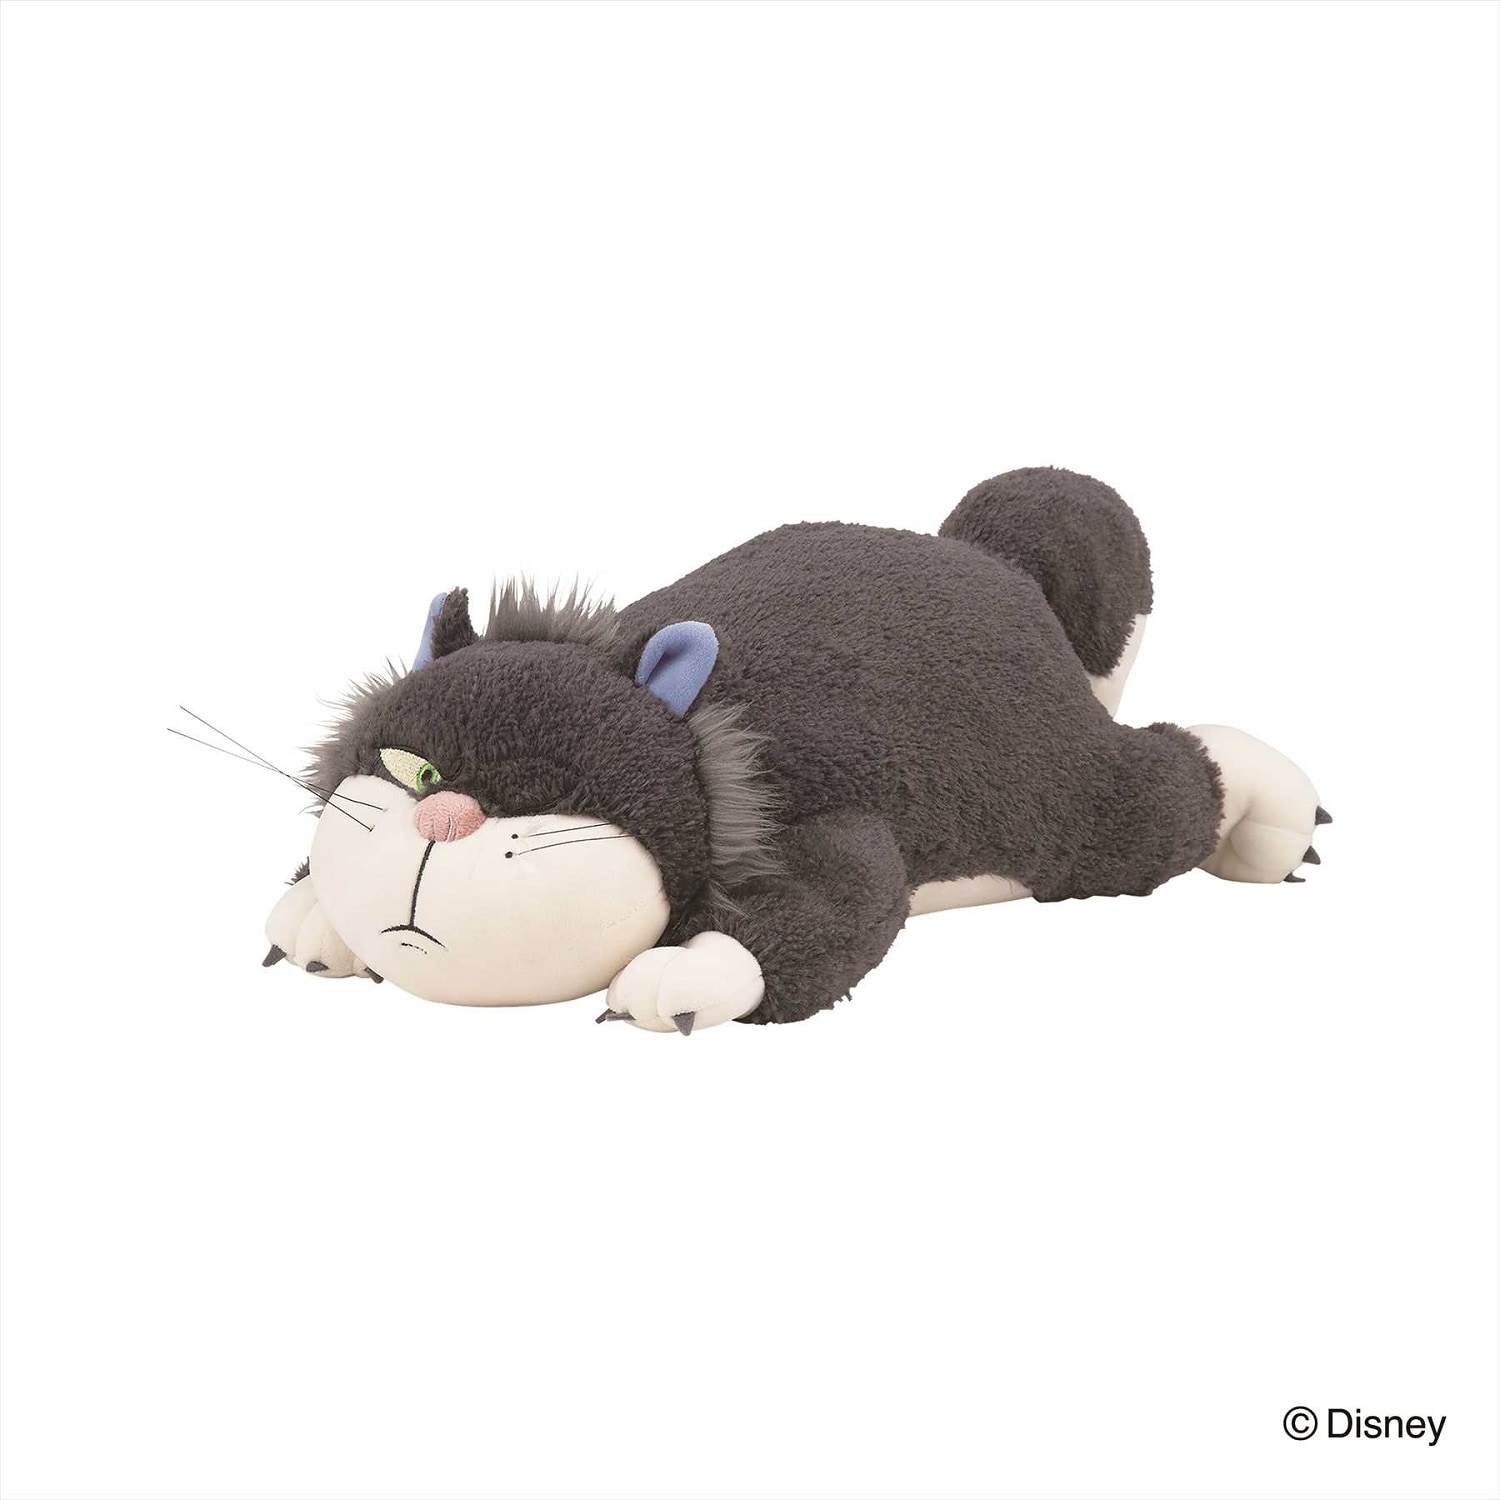 【ディズニー/Disney】おもちのような柔らかさの抱き枕「ルシファー」